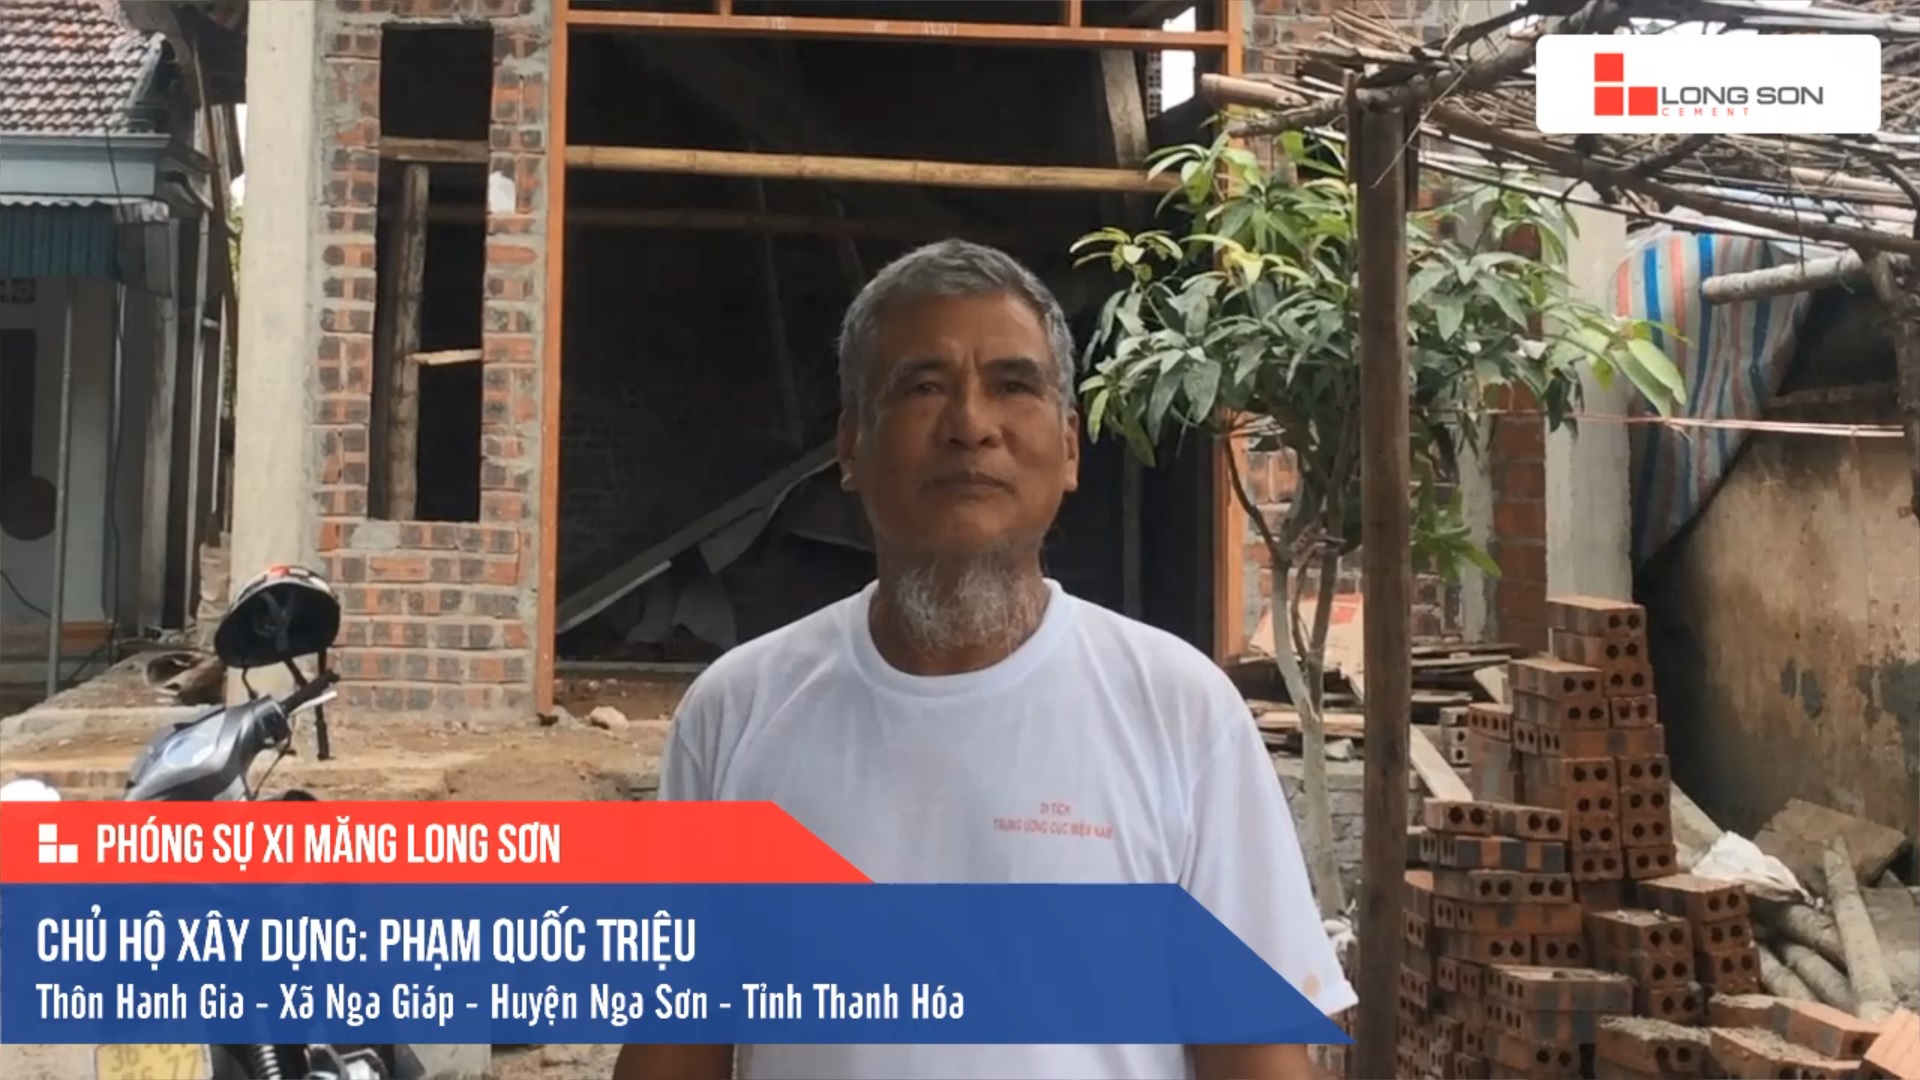 Phóng sự công trình sử dụng Xi măng Long Sơn tại Thanh Hóa 03.09.2019